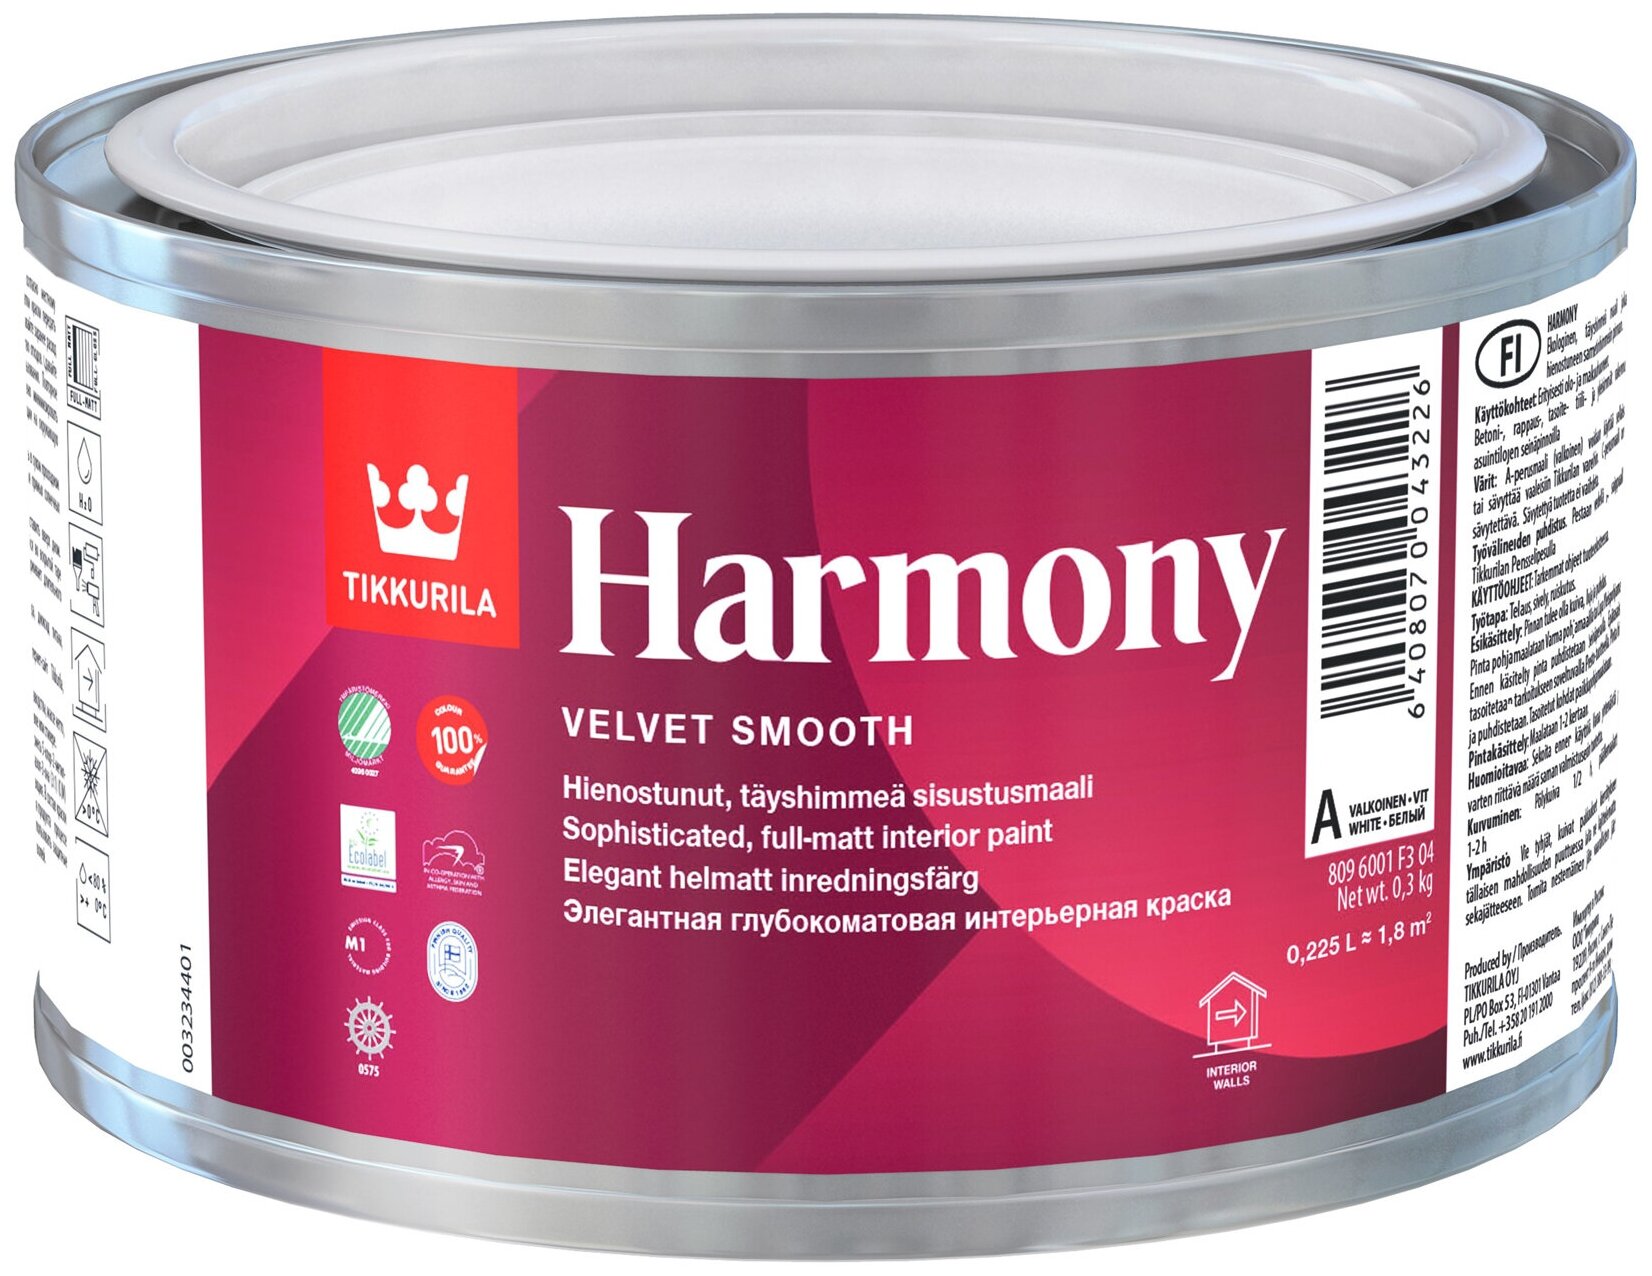 Краска для стен и потолков Tikkurila Harmony база А, белая, глубокоматовая (0,225л)